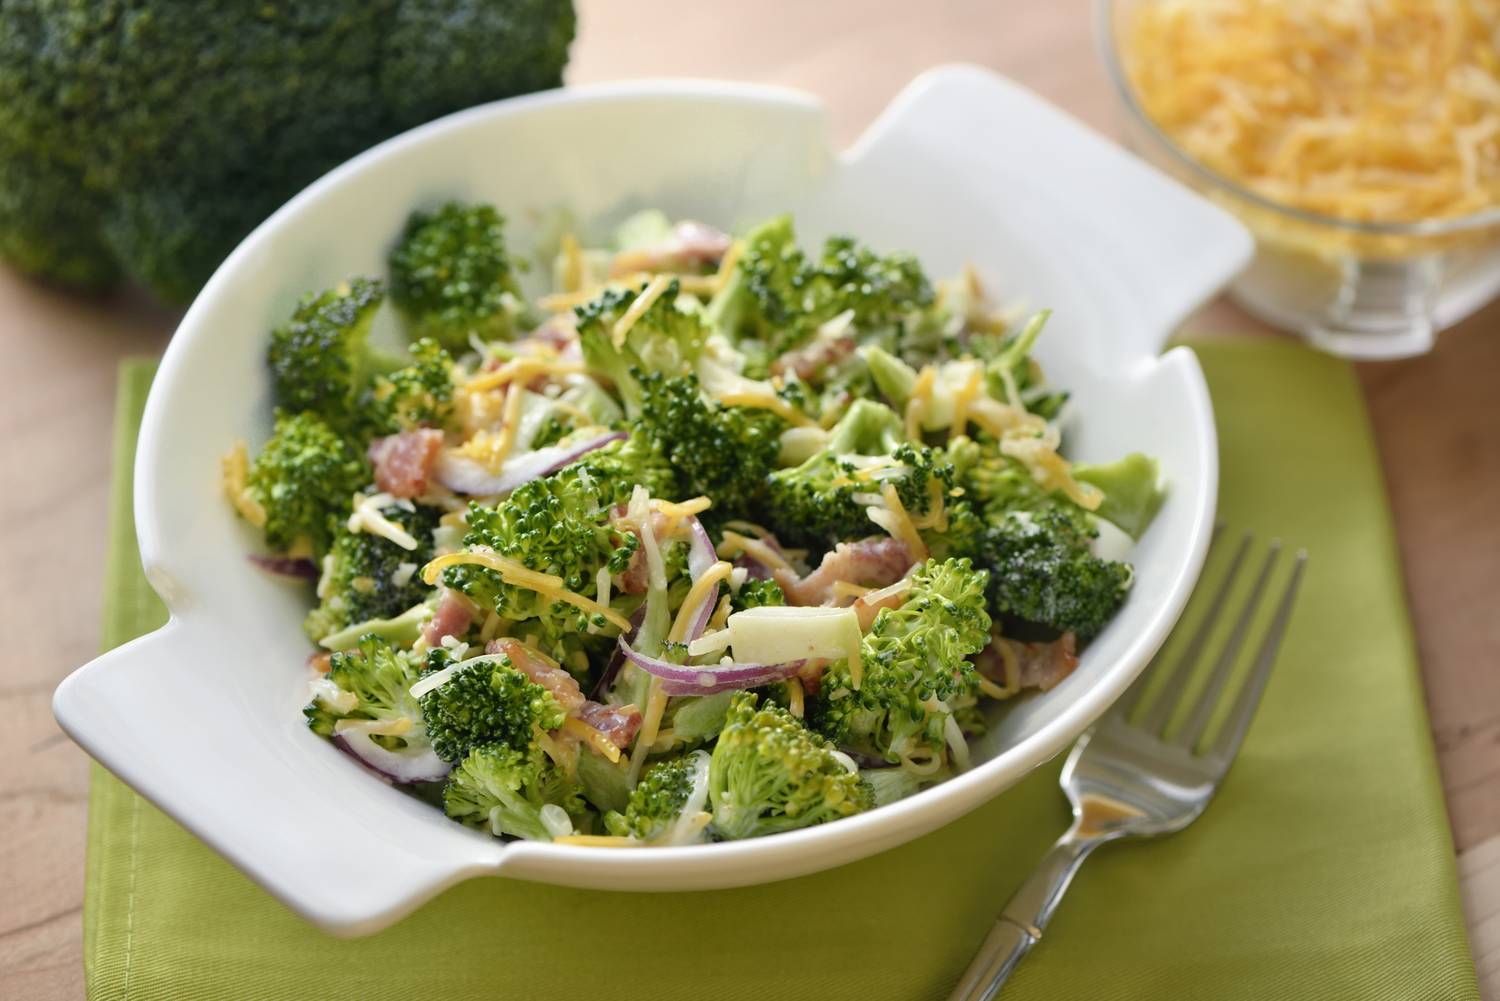 Nyersen fogyasztva a legegészségesebb a zöldség, ízletes brokkolisaláta is készülhet belőle. Lila hagymával, sajttal, majonézes öntettel isteni finom.